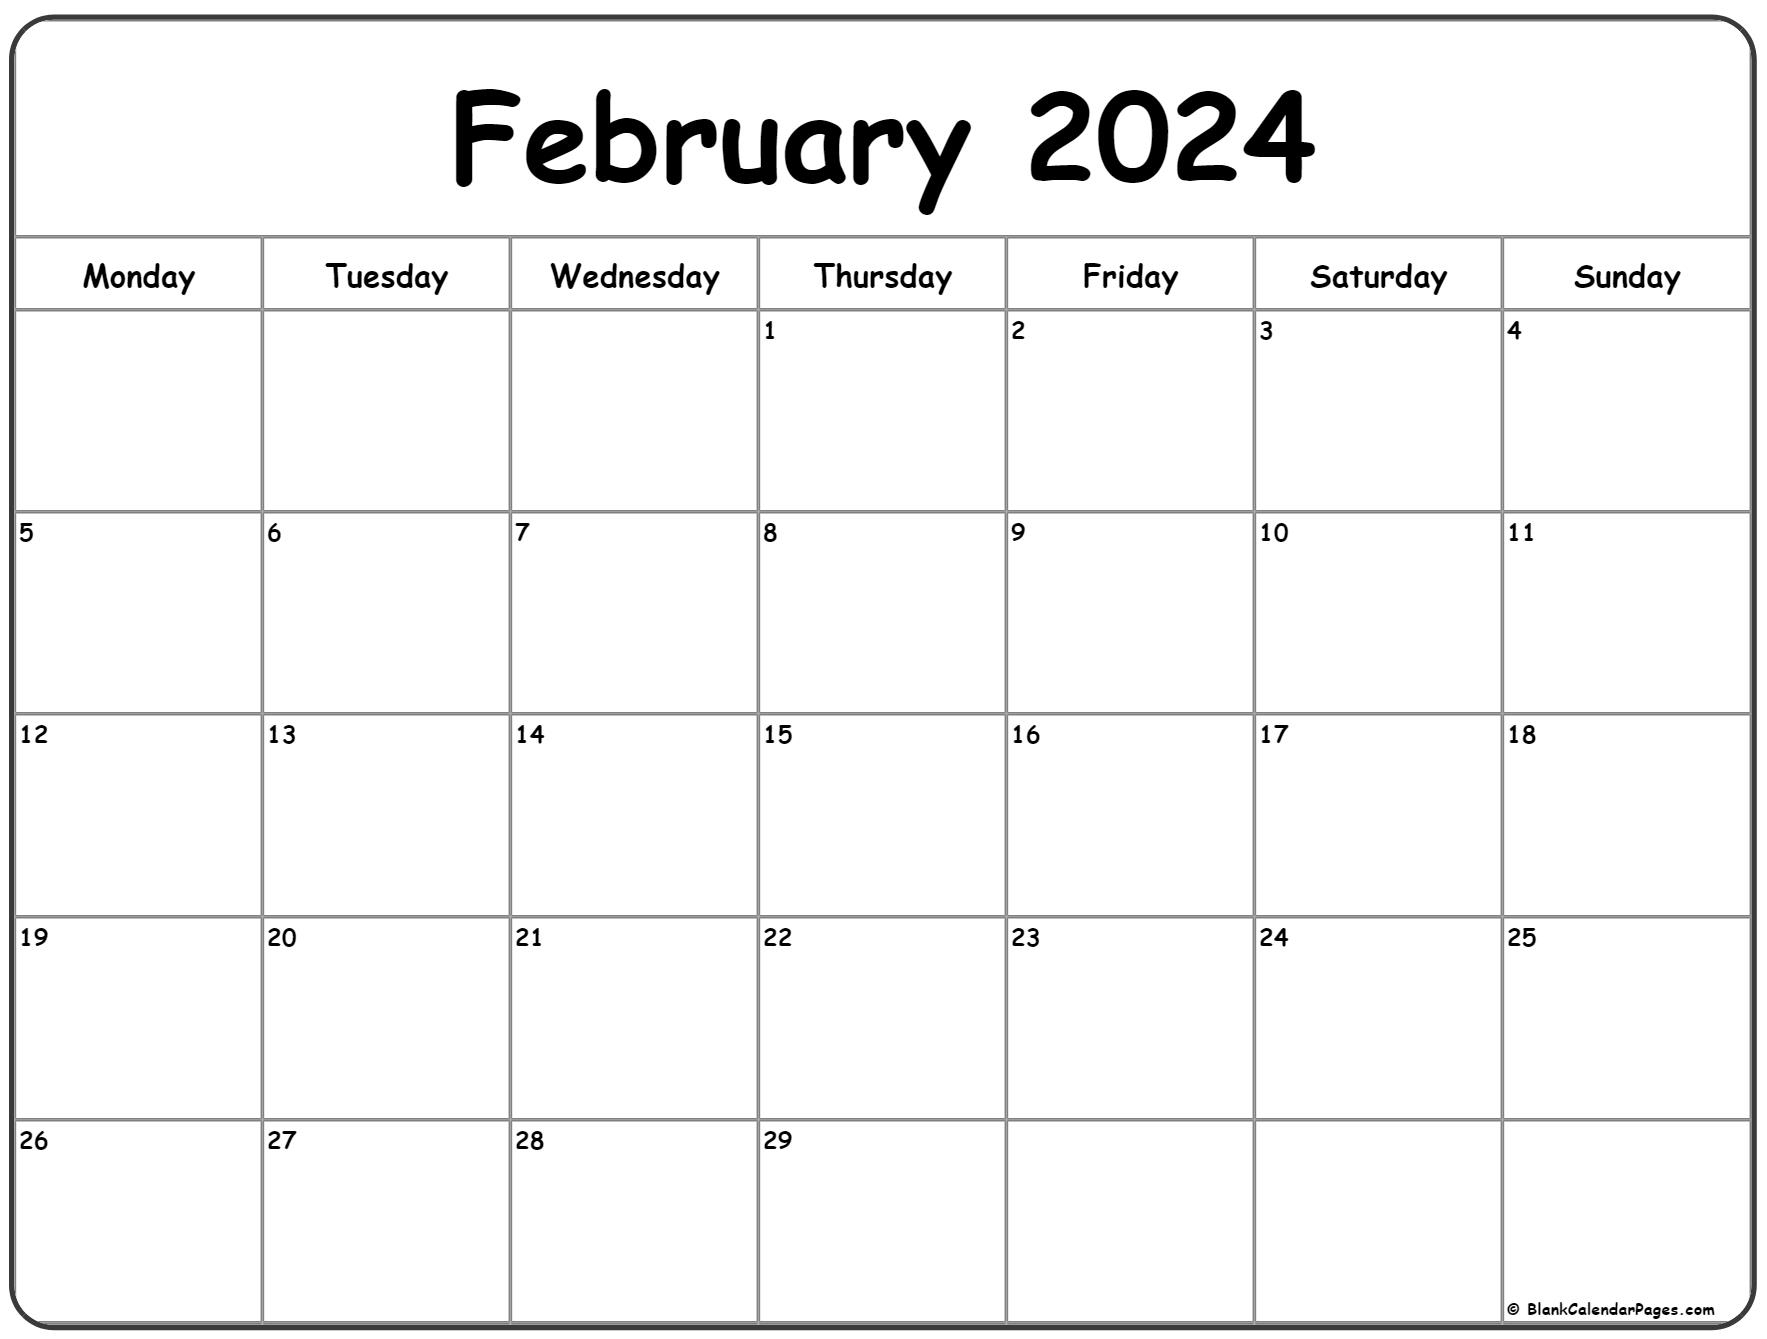 February 2024 Monday Calendar | Monday To Sunday for Printable February 2024 Calendar